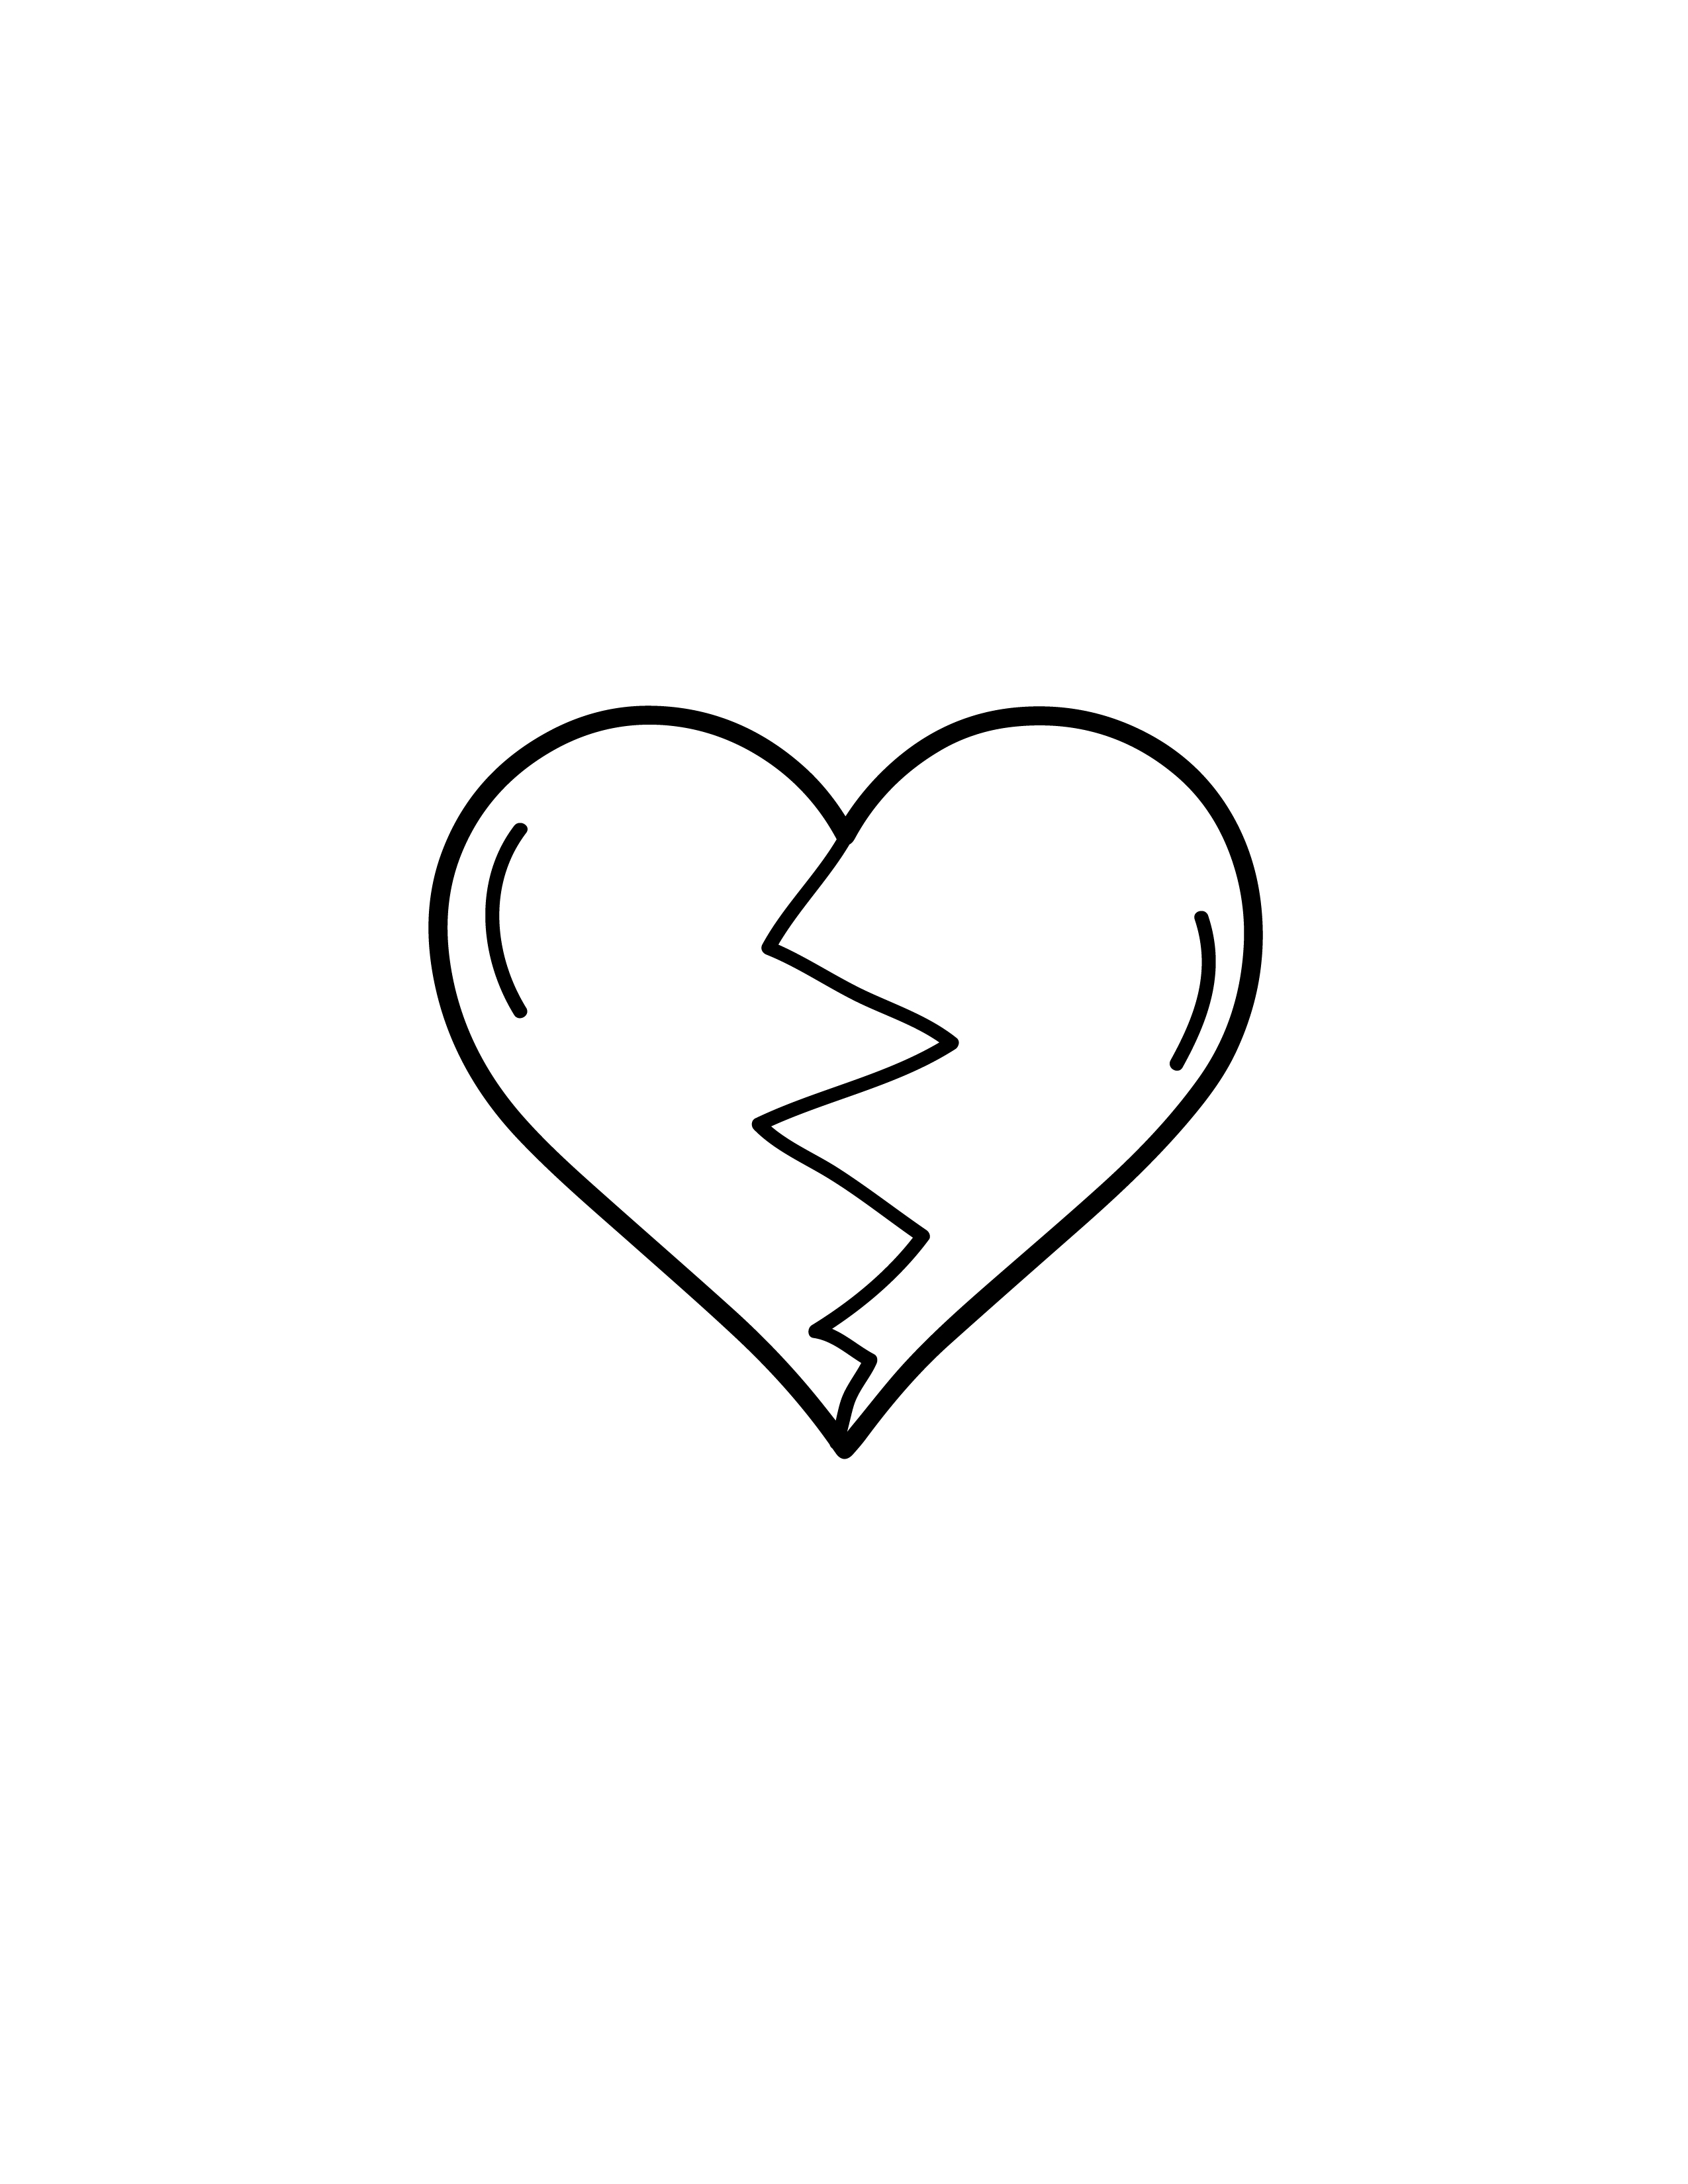 simple drawings of broken hearts